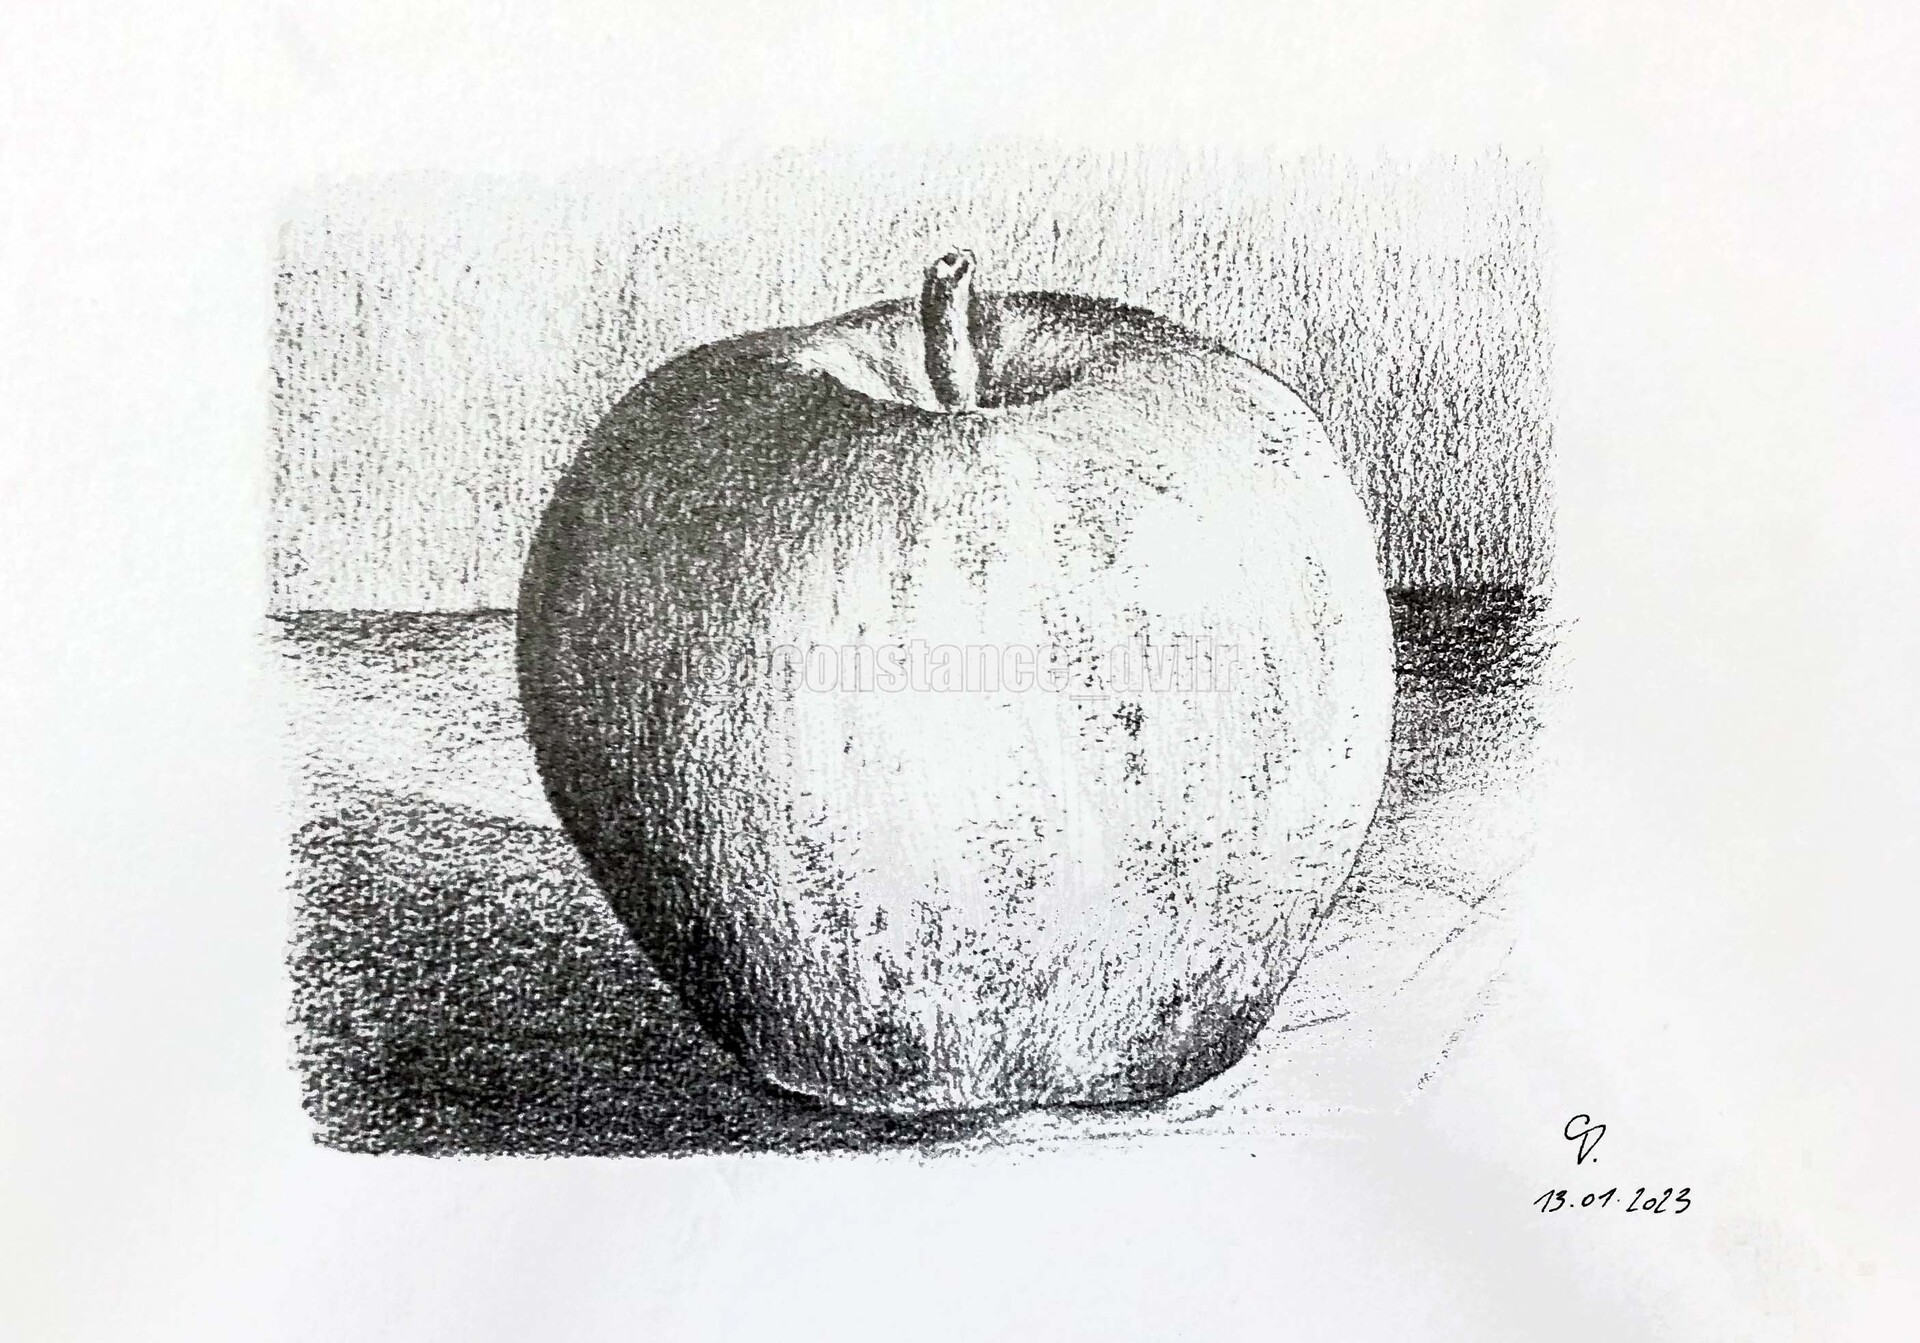 ArtStation - Black and white apple